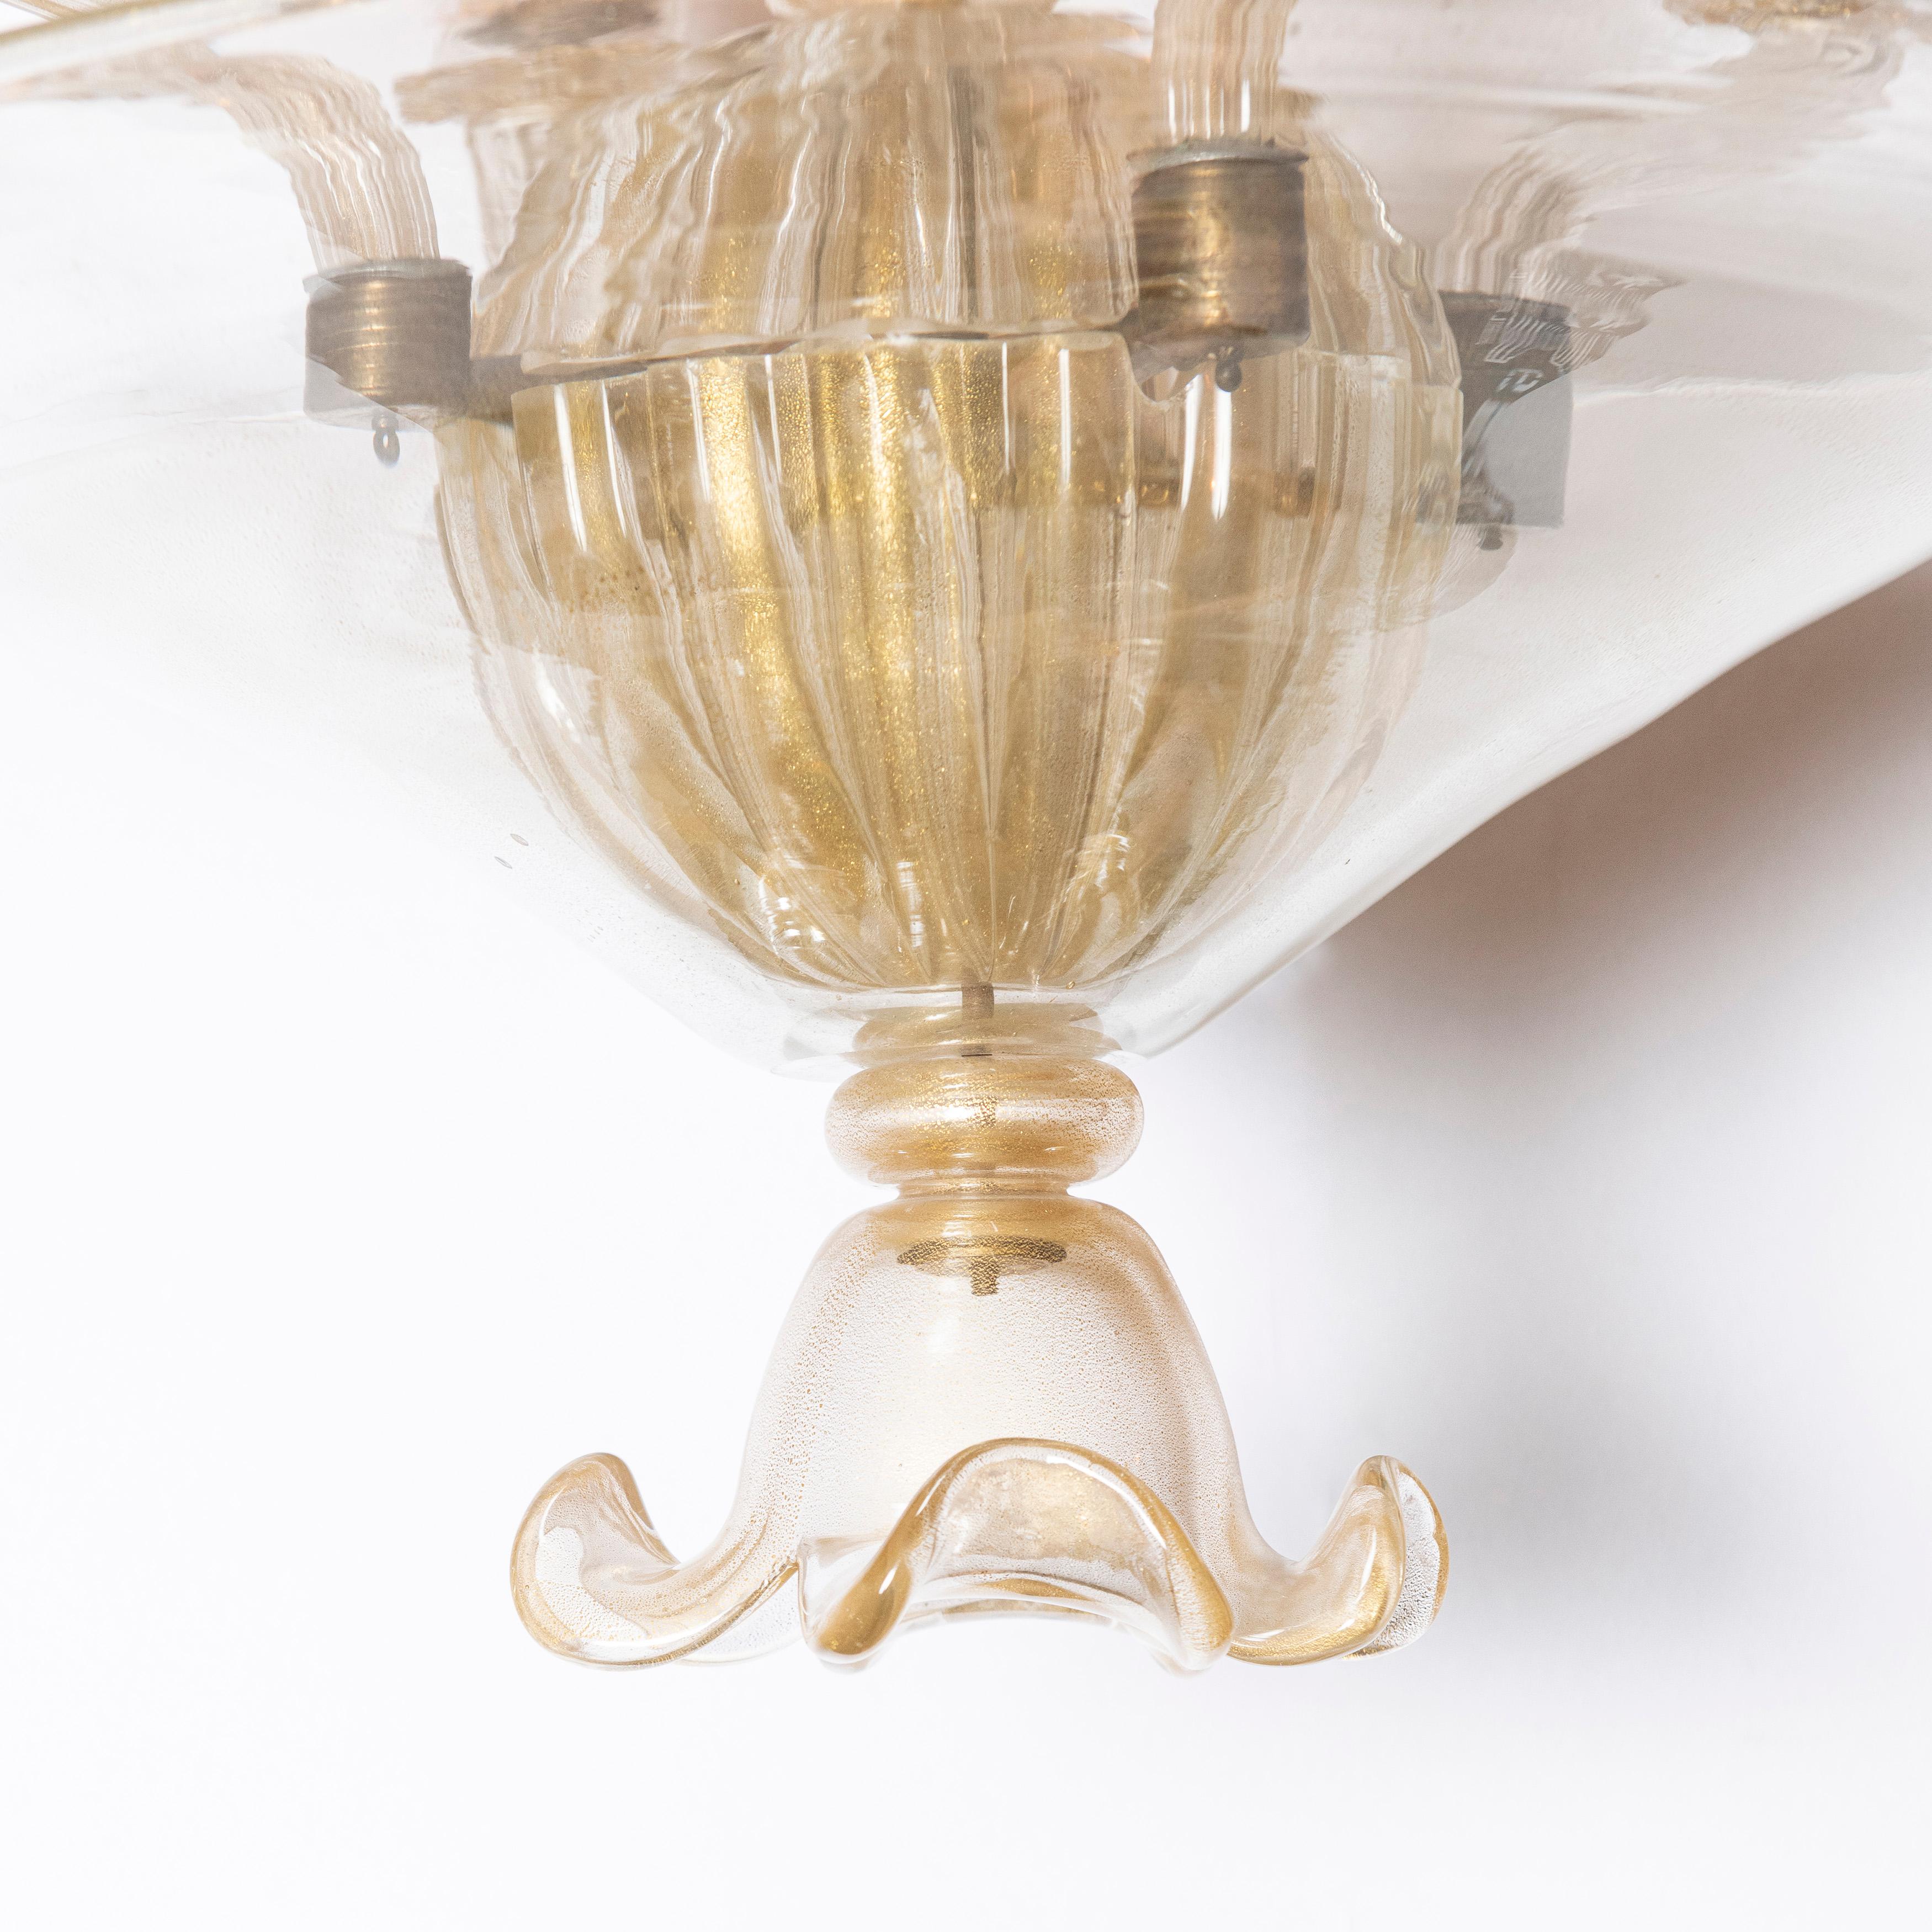 Kronleuchter aus Muranoglas mit Goldeinschlüssen von Barovier & Toso, Italien, um 1950.
Vier Lichter.